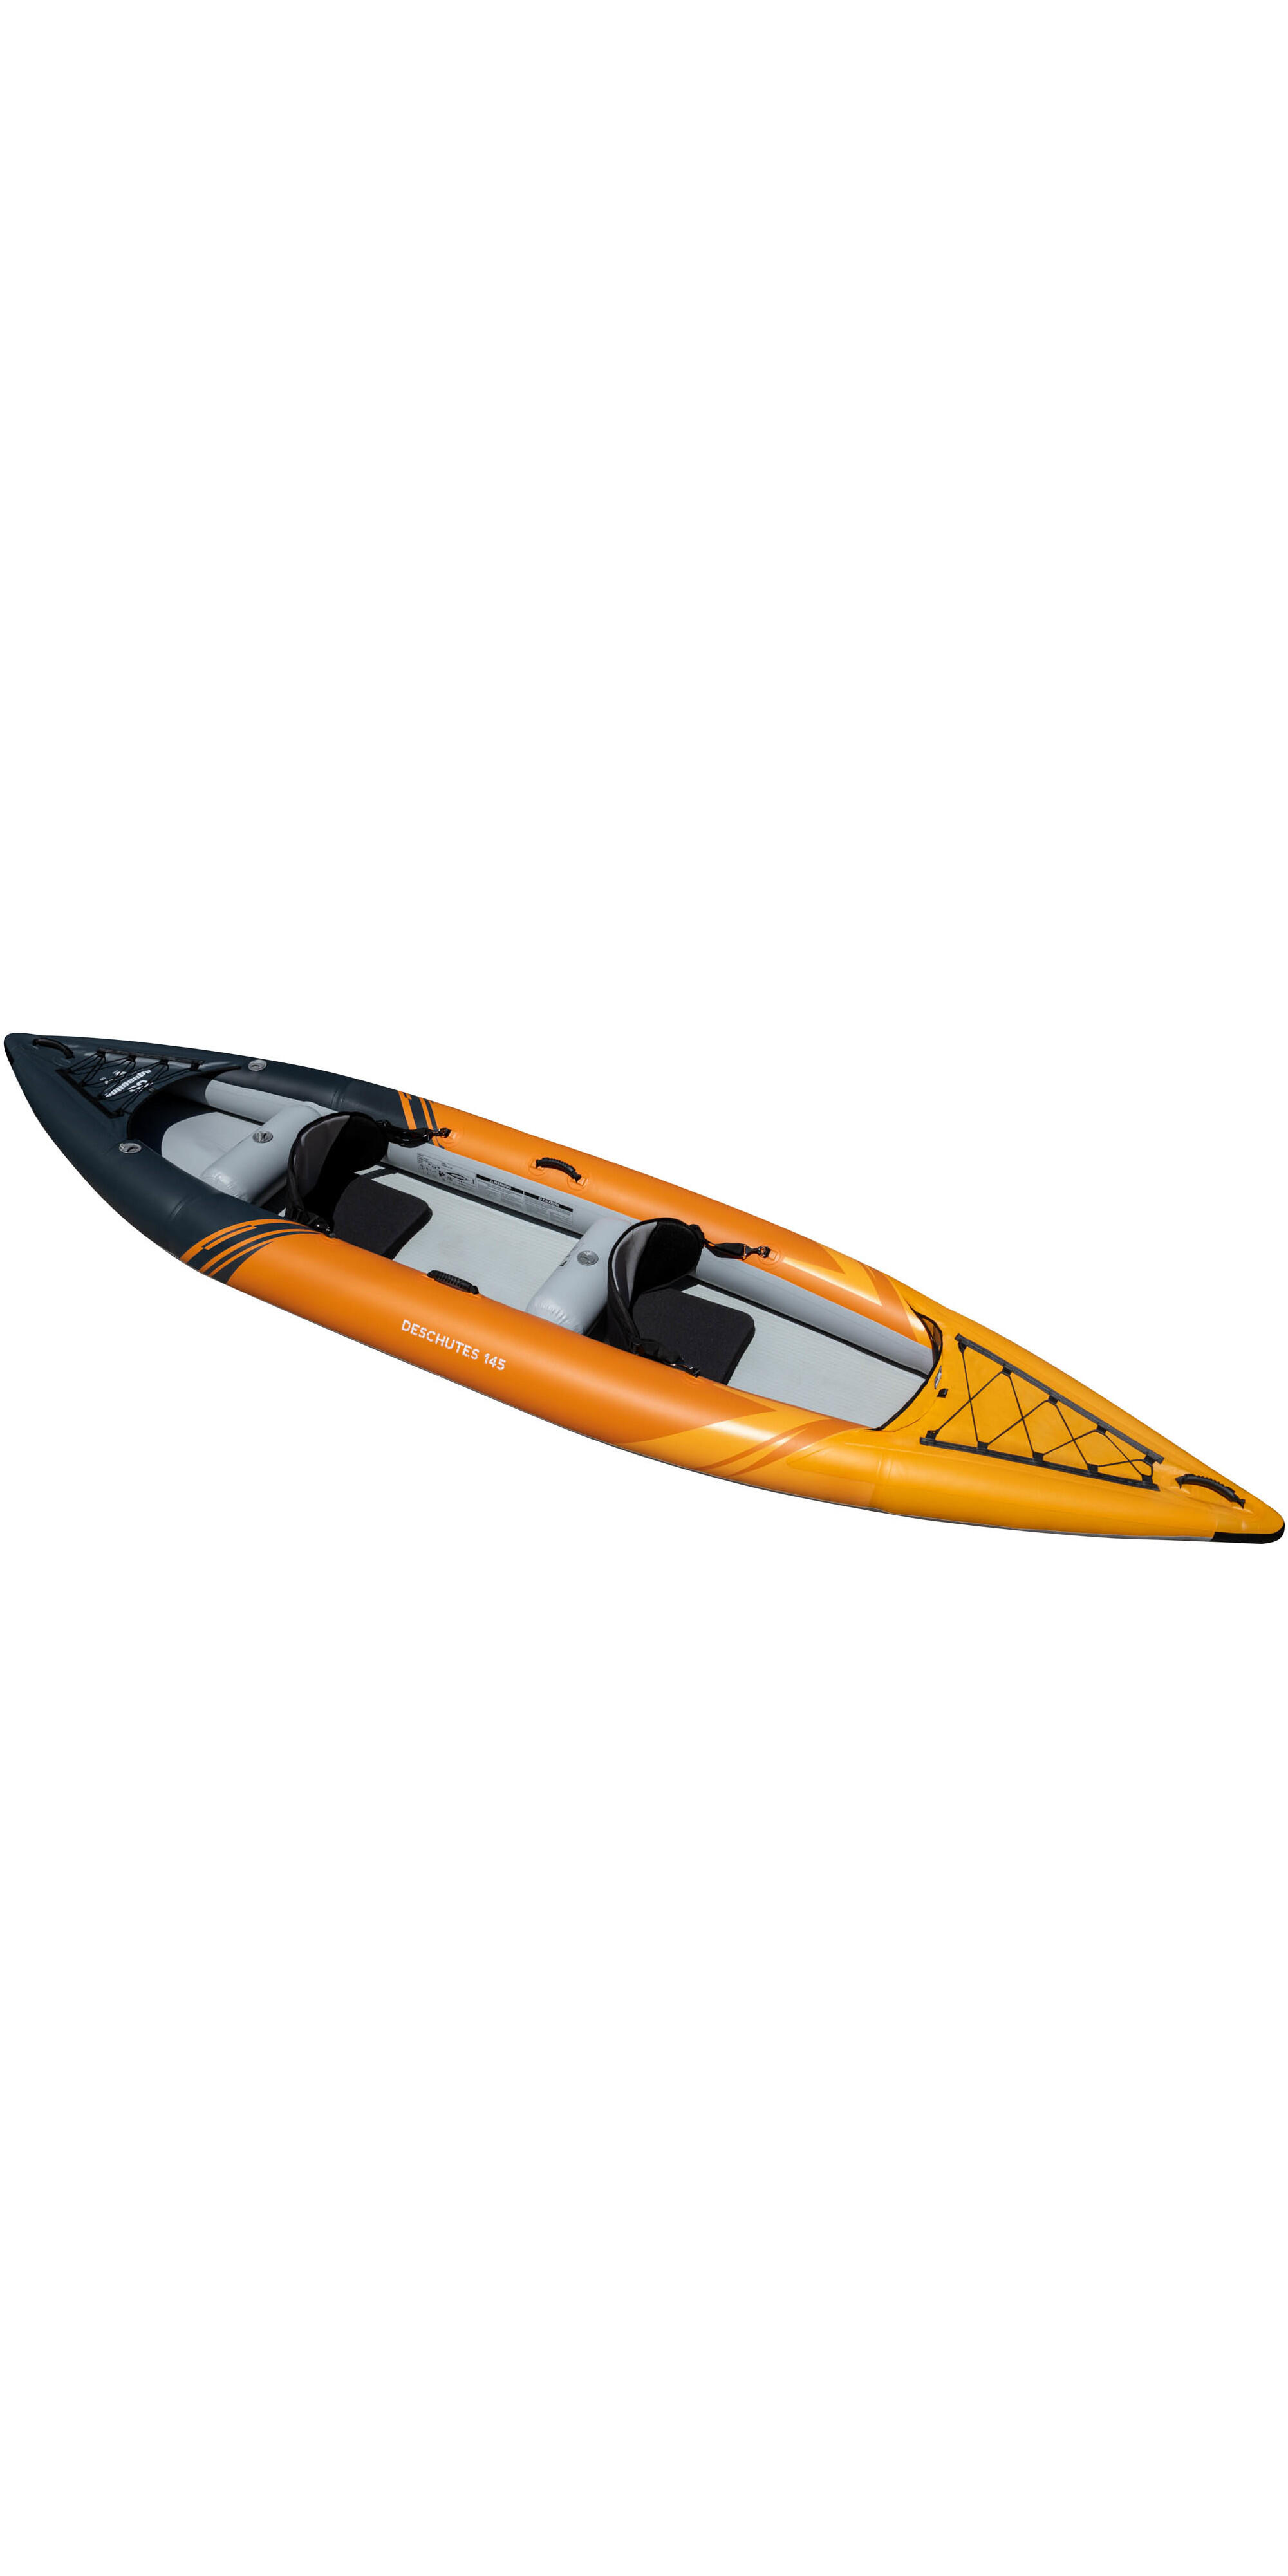 Aquaglide Deschutes 145 2 Man Kayak - Kayak Only 2/4